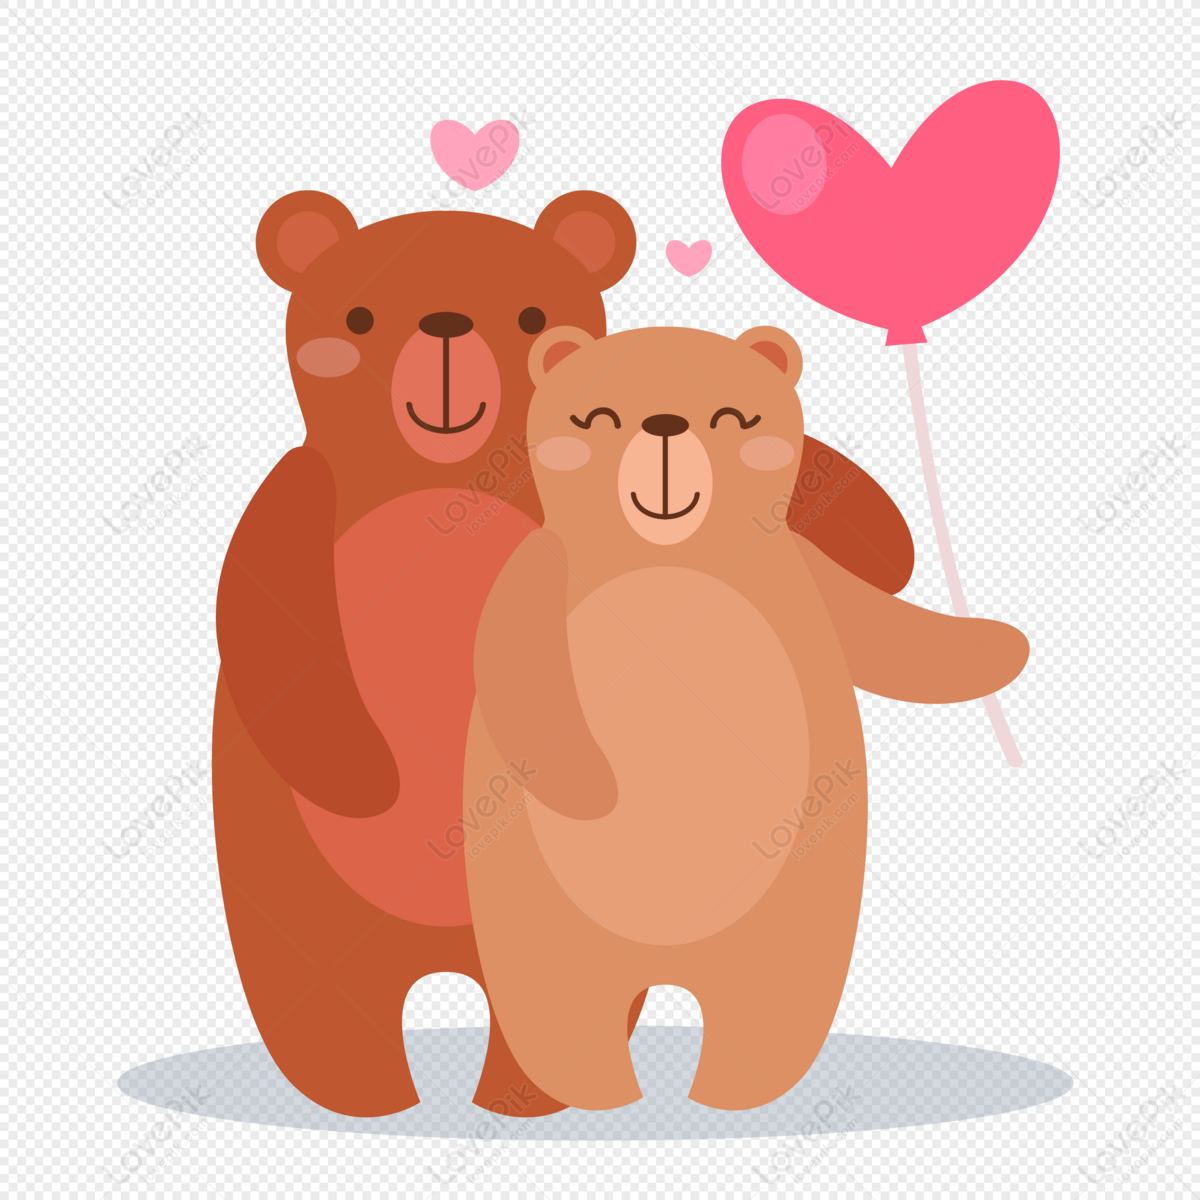 Nhìn ảnh về gấu ôm nhau, bạn sẽ cảm thấy đẹp đến không ngờ. Cứ như thế, tình yêu thật sự có thể xuất hiện ở mọi thứ trên đời đấy. Gấu ôm nhau đáng yêu đã trở thành biểu tượng của tình cảm, hãy để hình ảnh đầy ý nghĩa này truyền cảm hứng cho bạn nào!